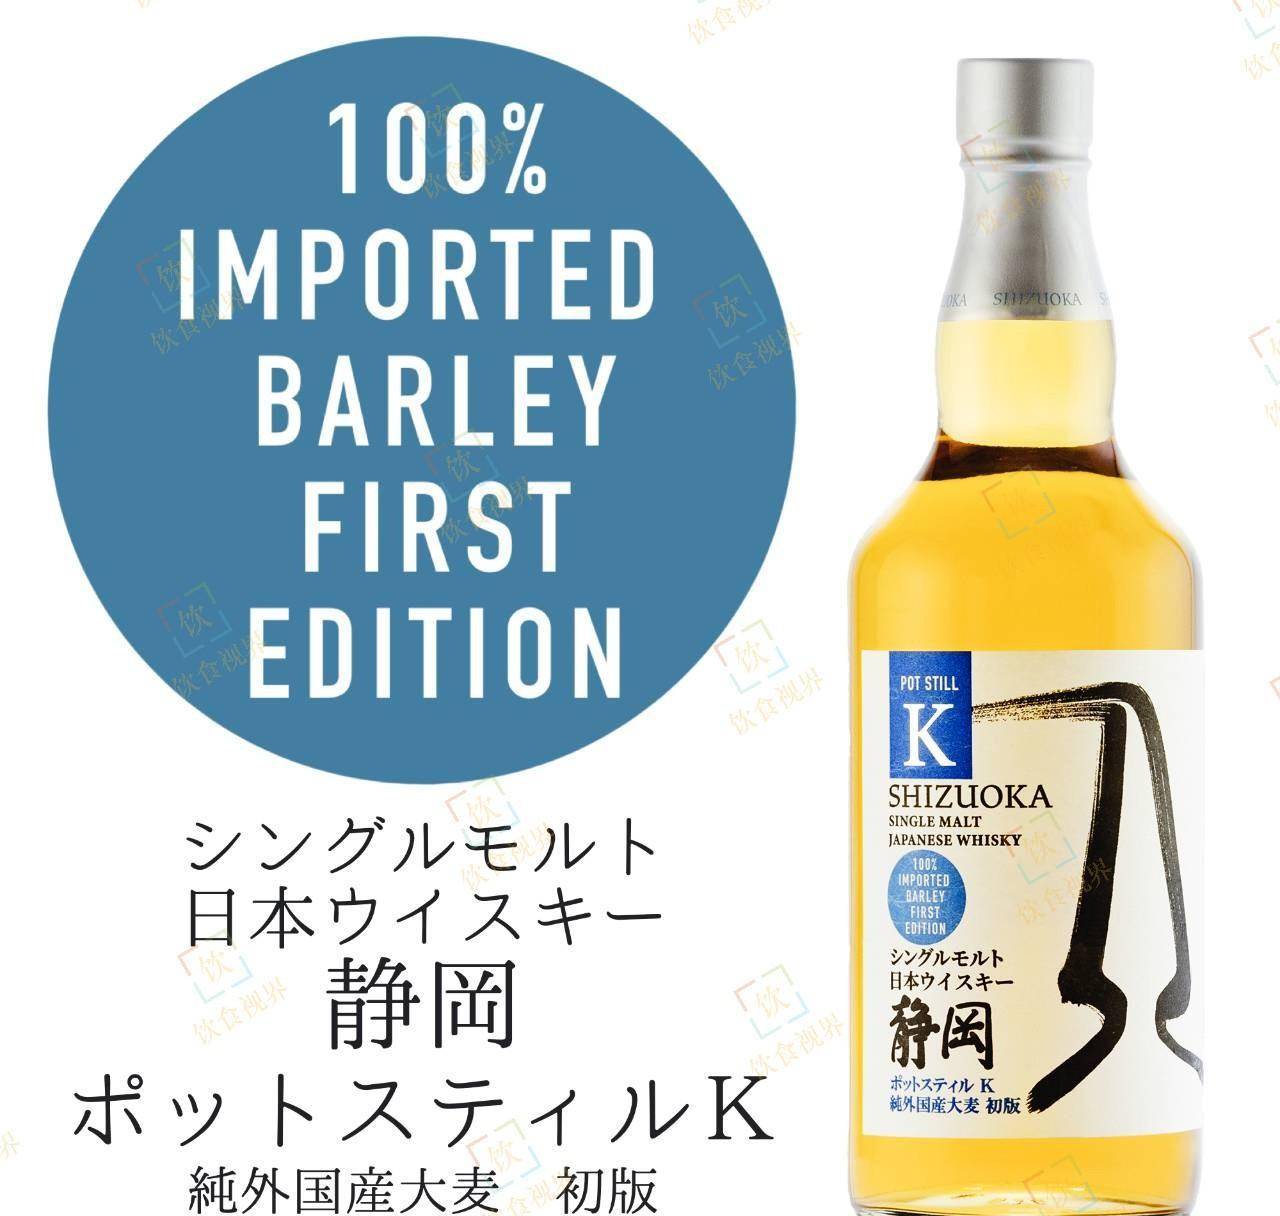 原创             全进口大麦!日本静岡蒸溜所第7款单一麦芽威士忌上市!